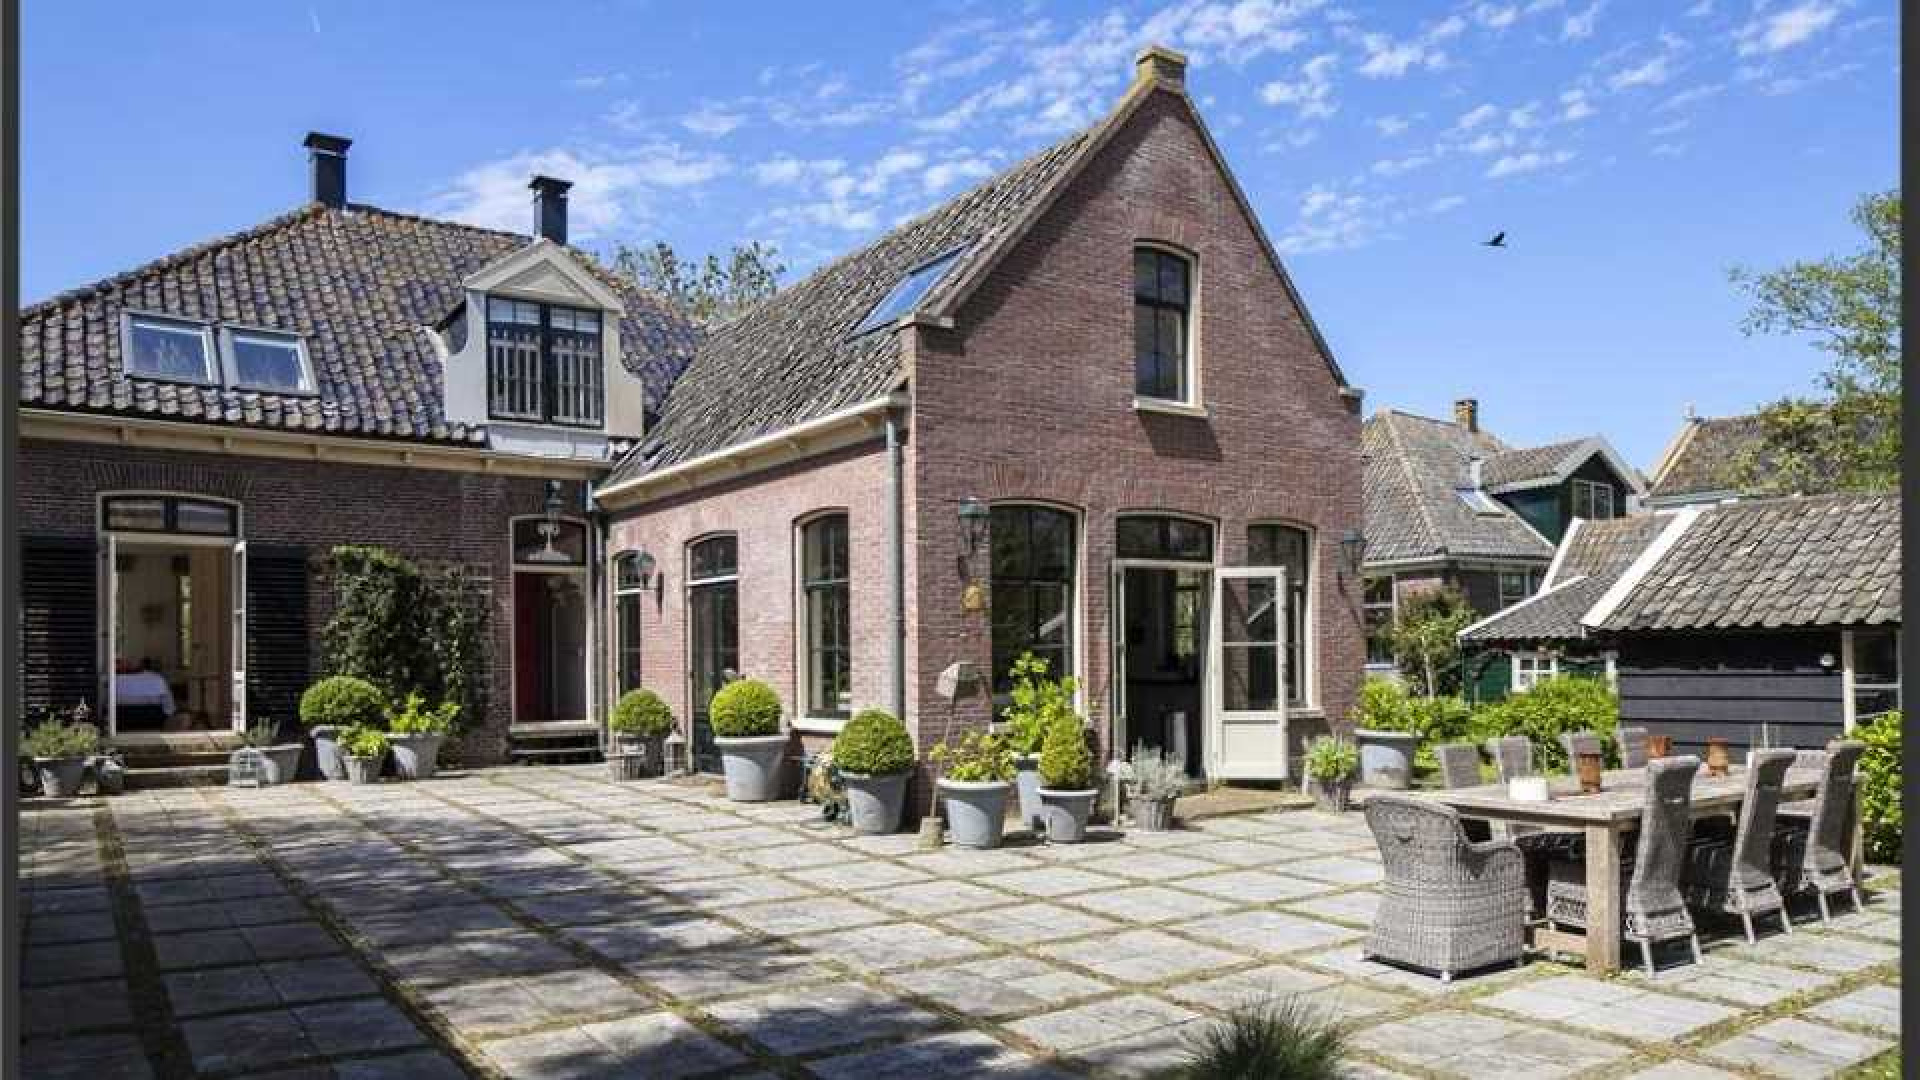 Trijntje Oosterhuis zet haar prachtige landelijke villa te koop. Zie foto's